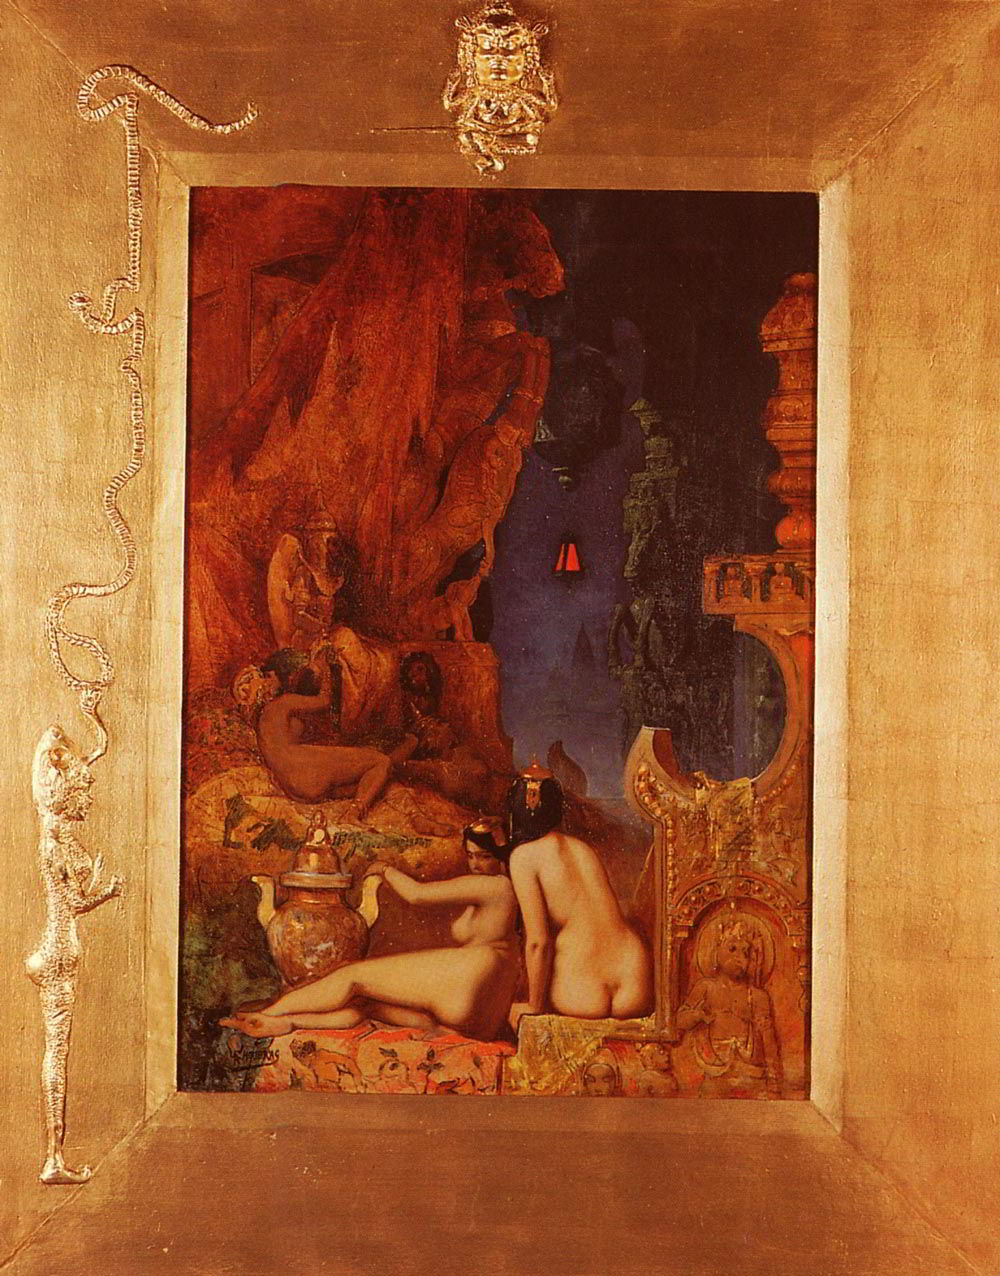 Oriental Fantasy by Alfred Choubrac